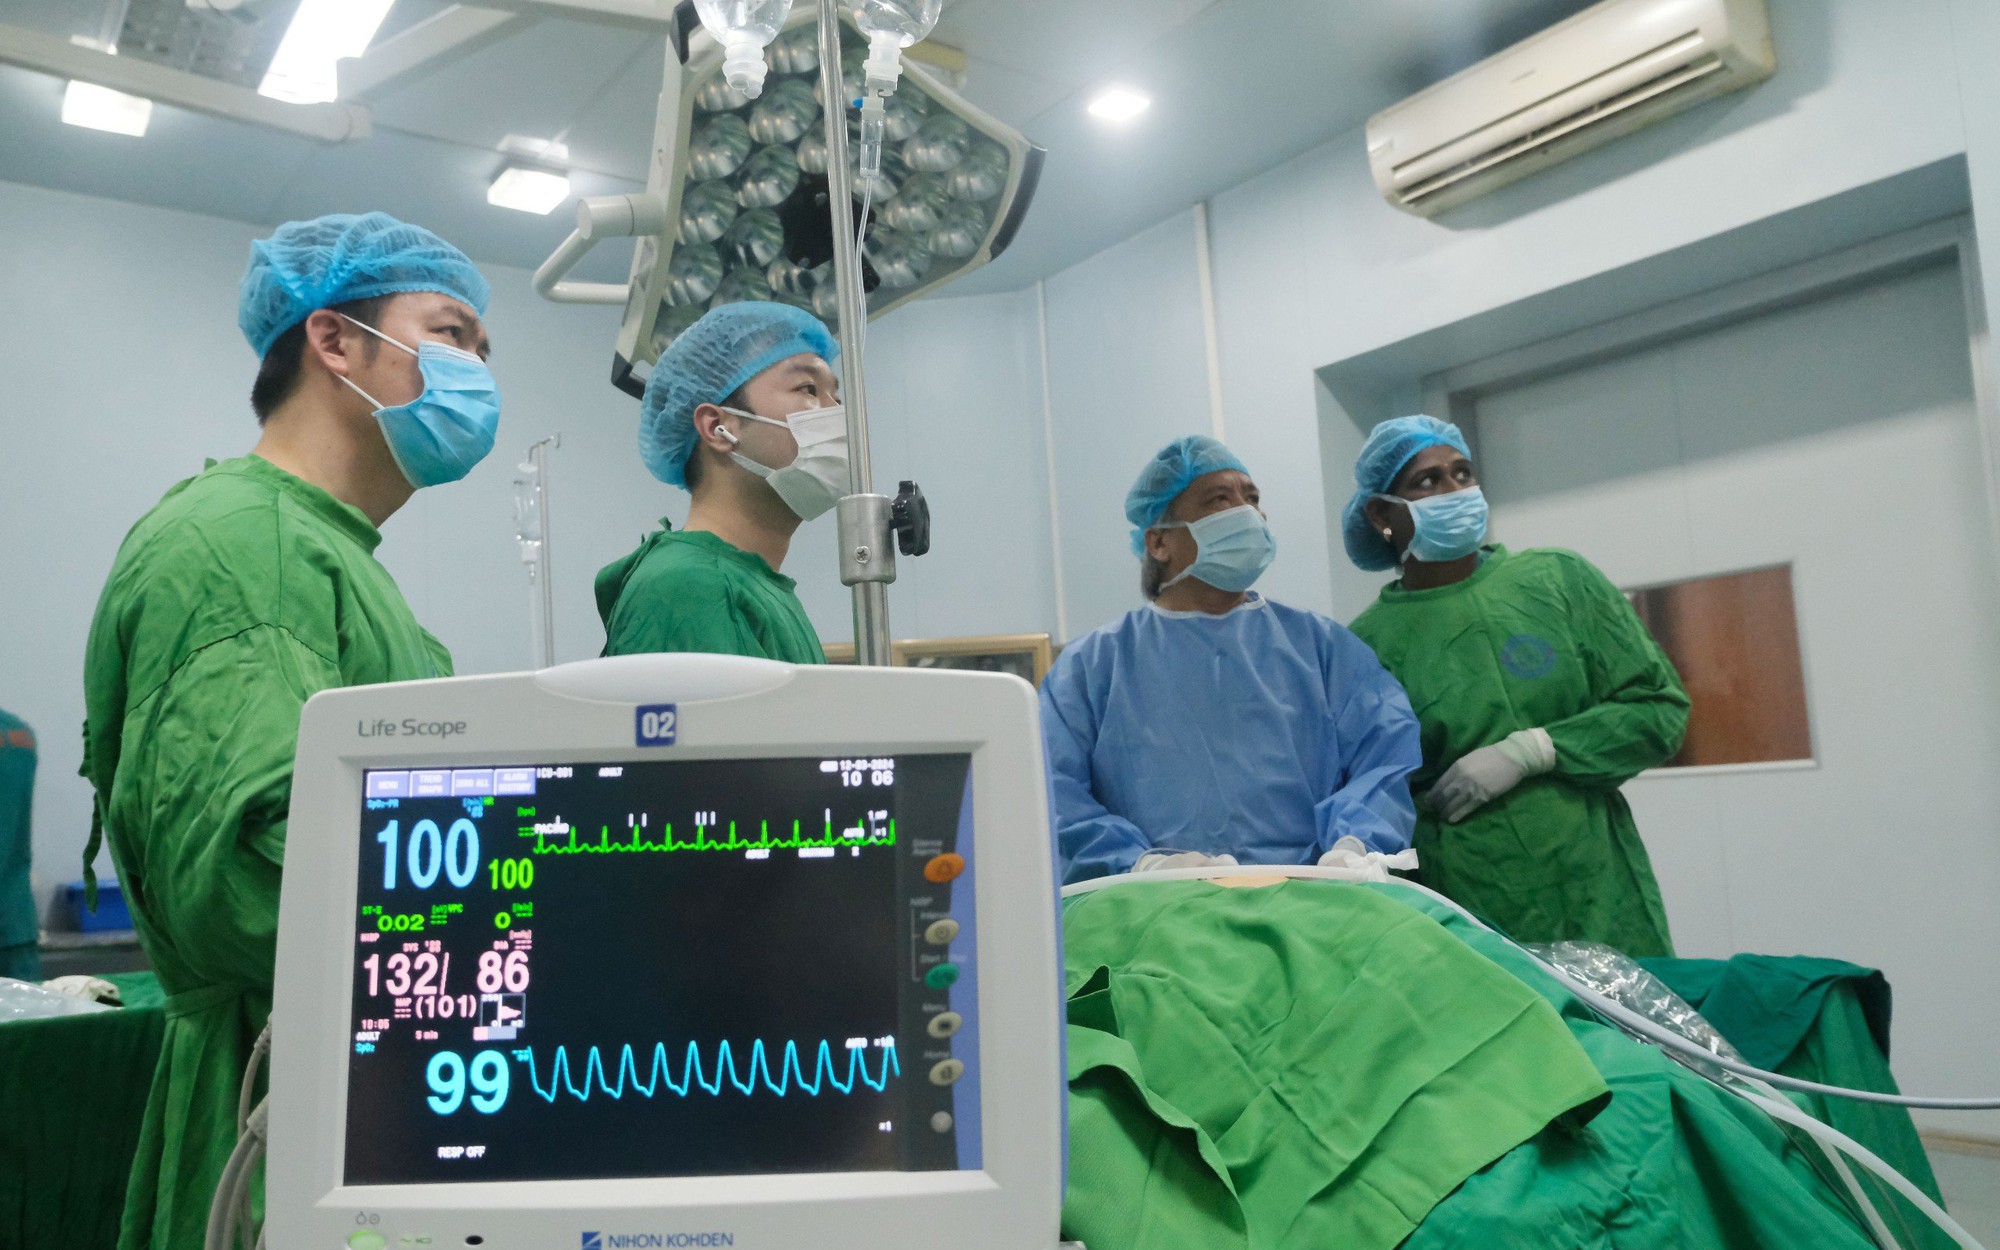 1 kỹ thuật mổ của Việt Nam được thế giới ngợi khen hết lời: Đã có hơn 300 bác sĩ nước ngoài tới học hỏi